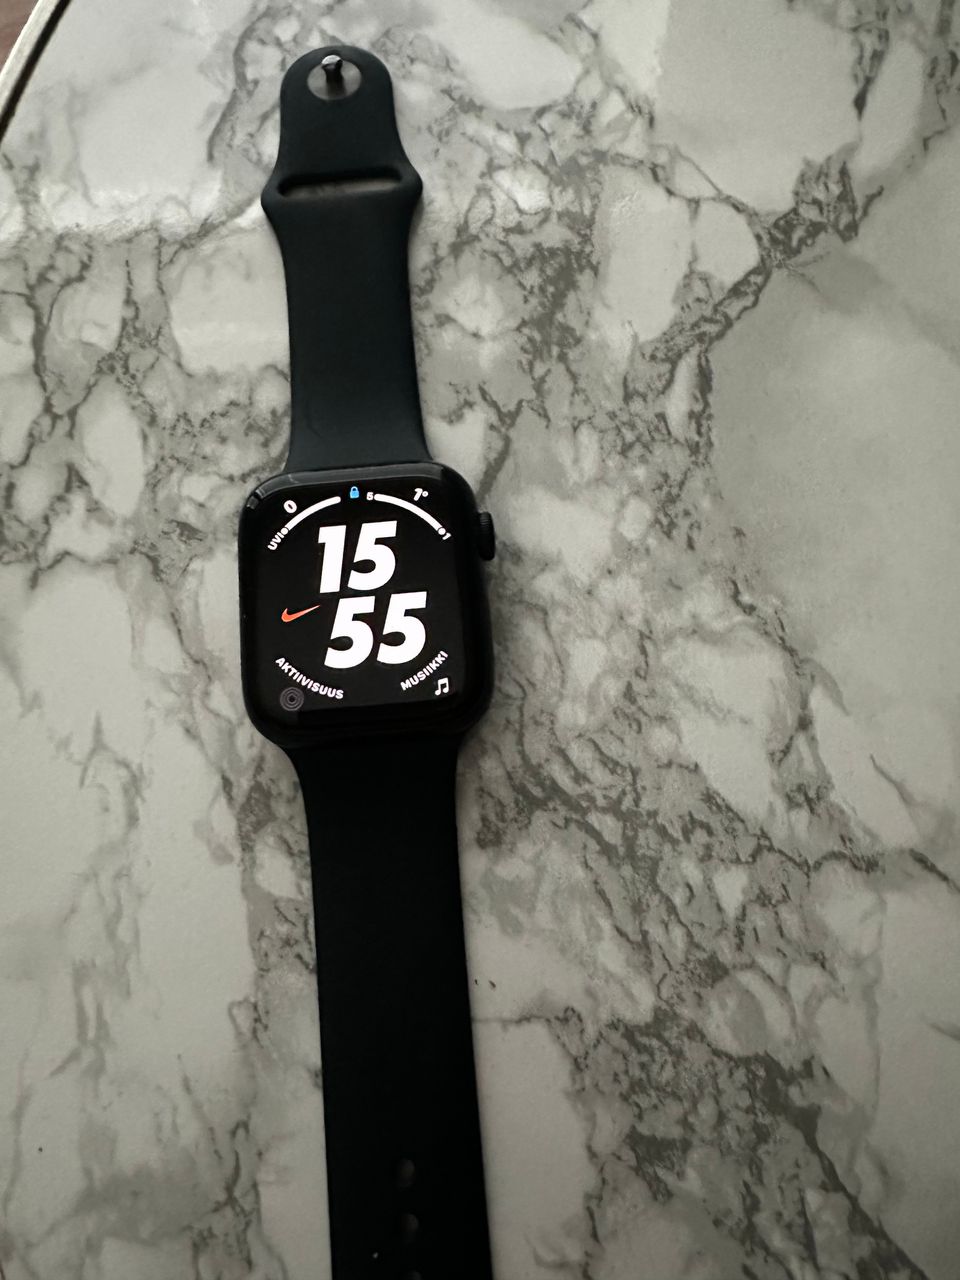 Apple watch se 2 44mm